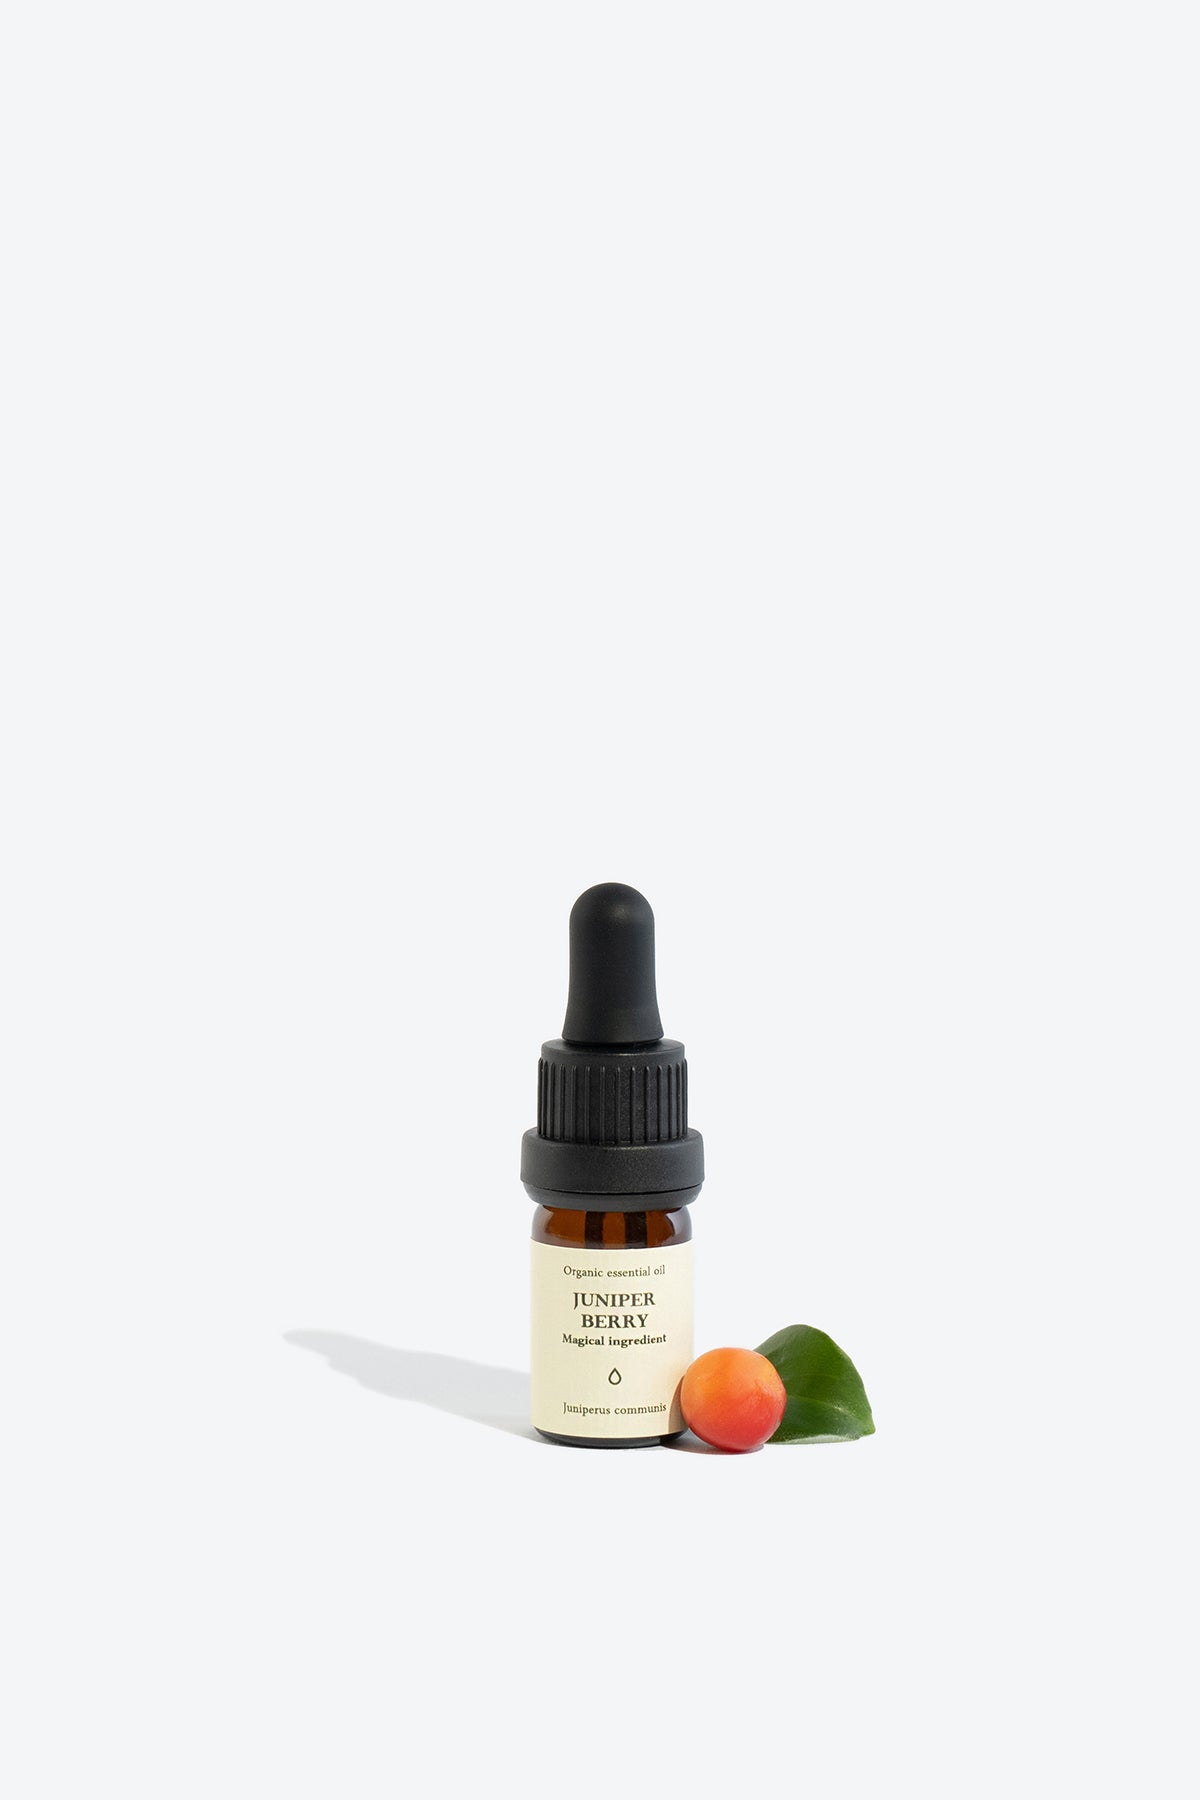 Juniper Berry Organic Essential Oil